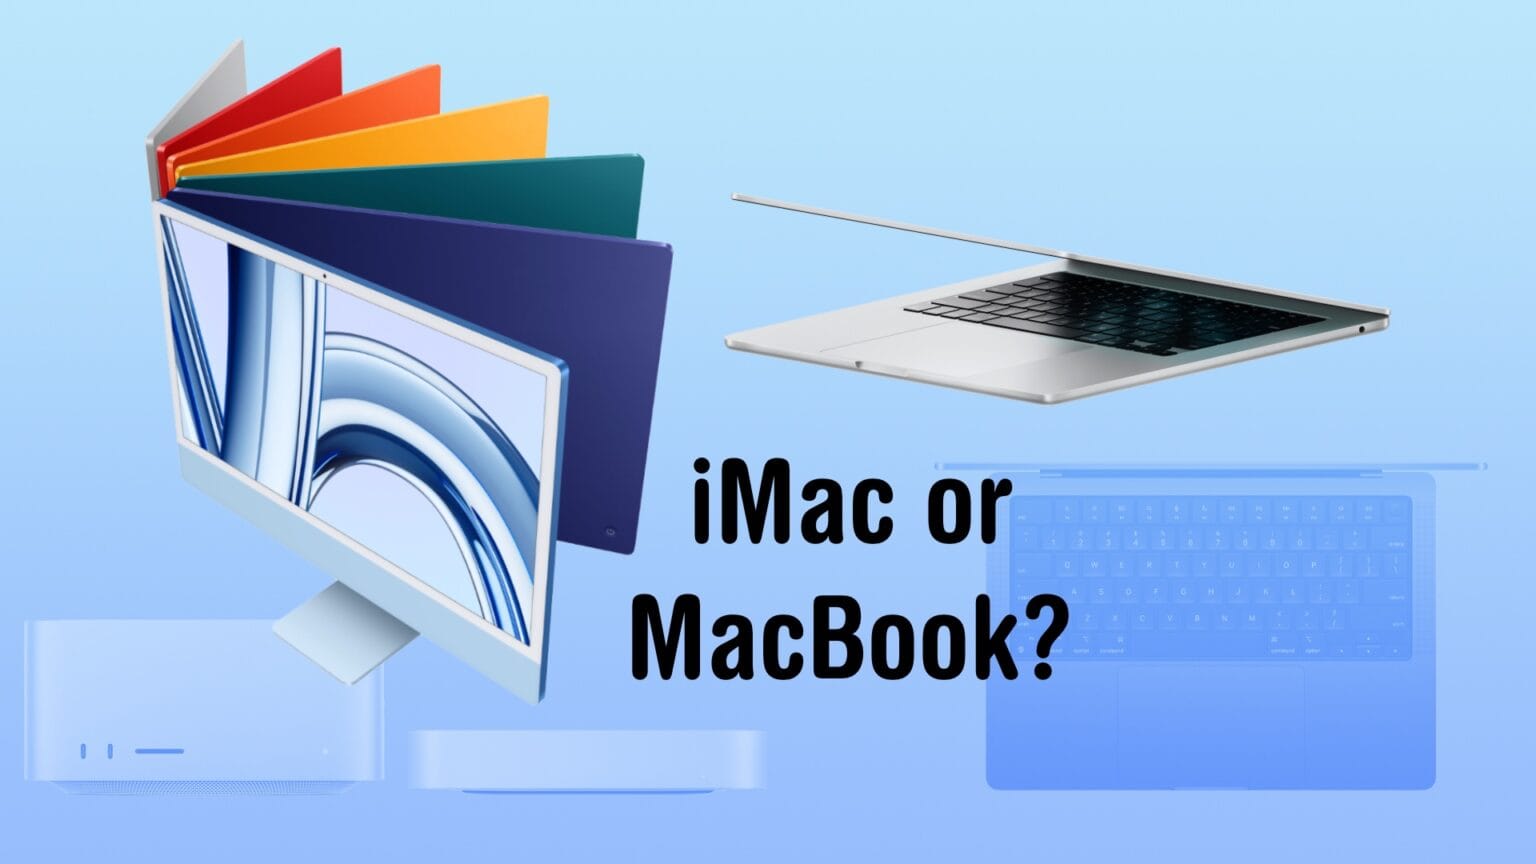 iMac or MacBook?